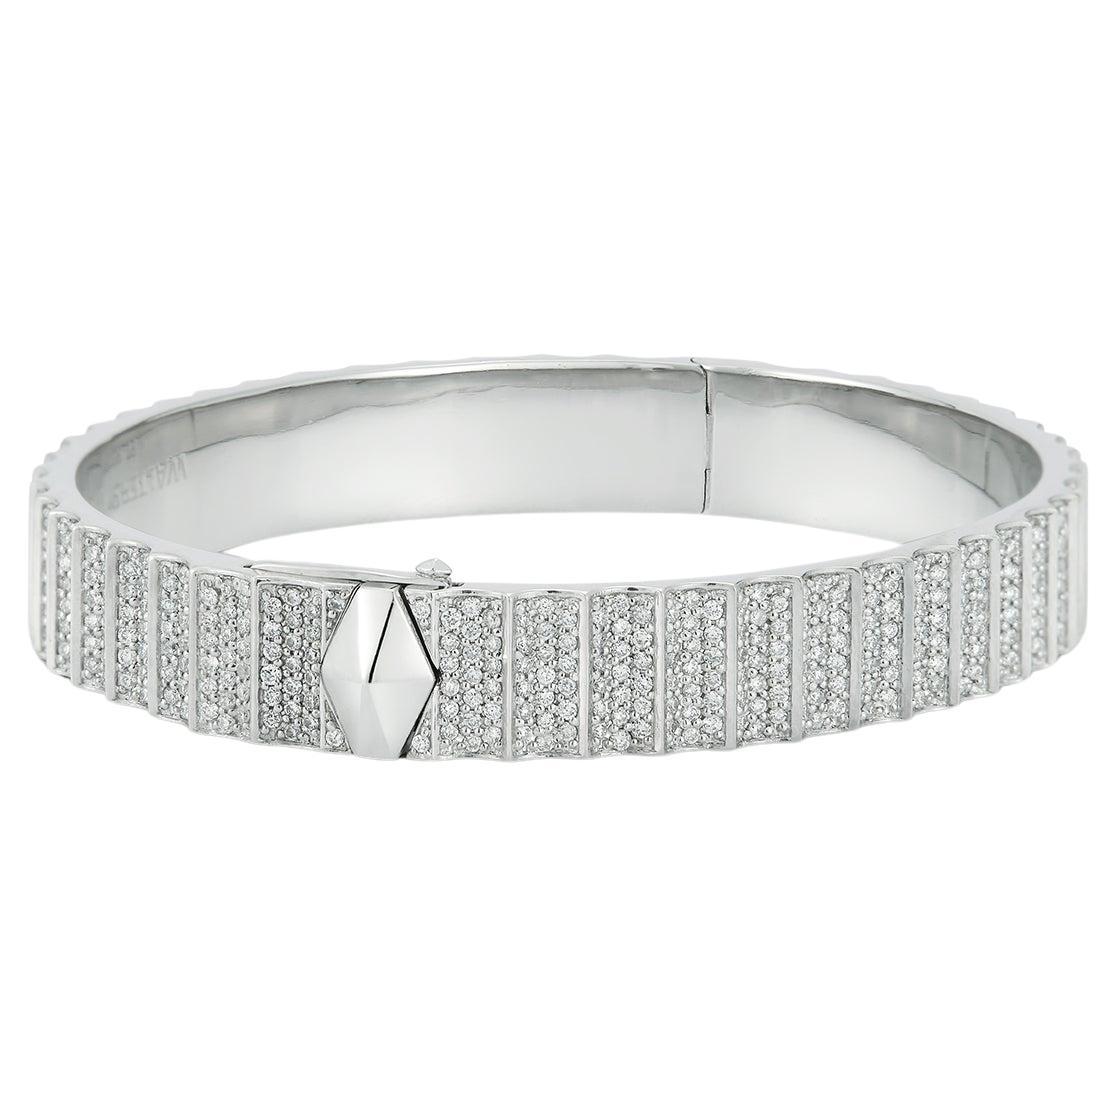 Walters Faith's Clive Collection Platinum All Diamond Fluted Bangle Armband. 3.15 Diamant Karat Gewicht. Die Größe des Armbands passt für ein 6